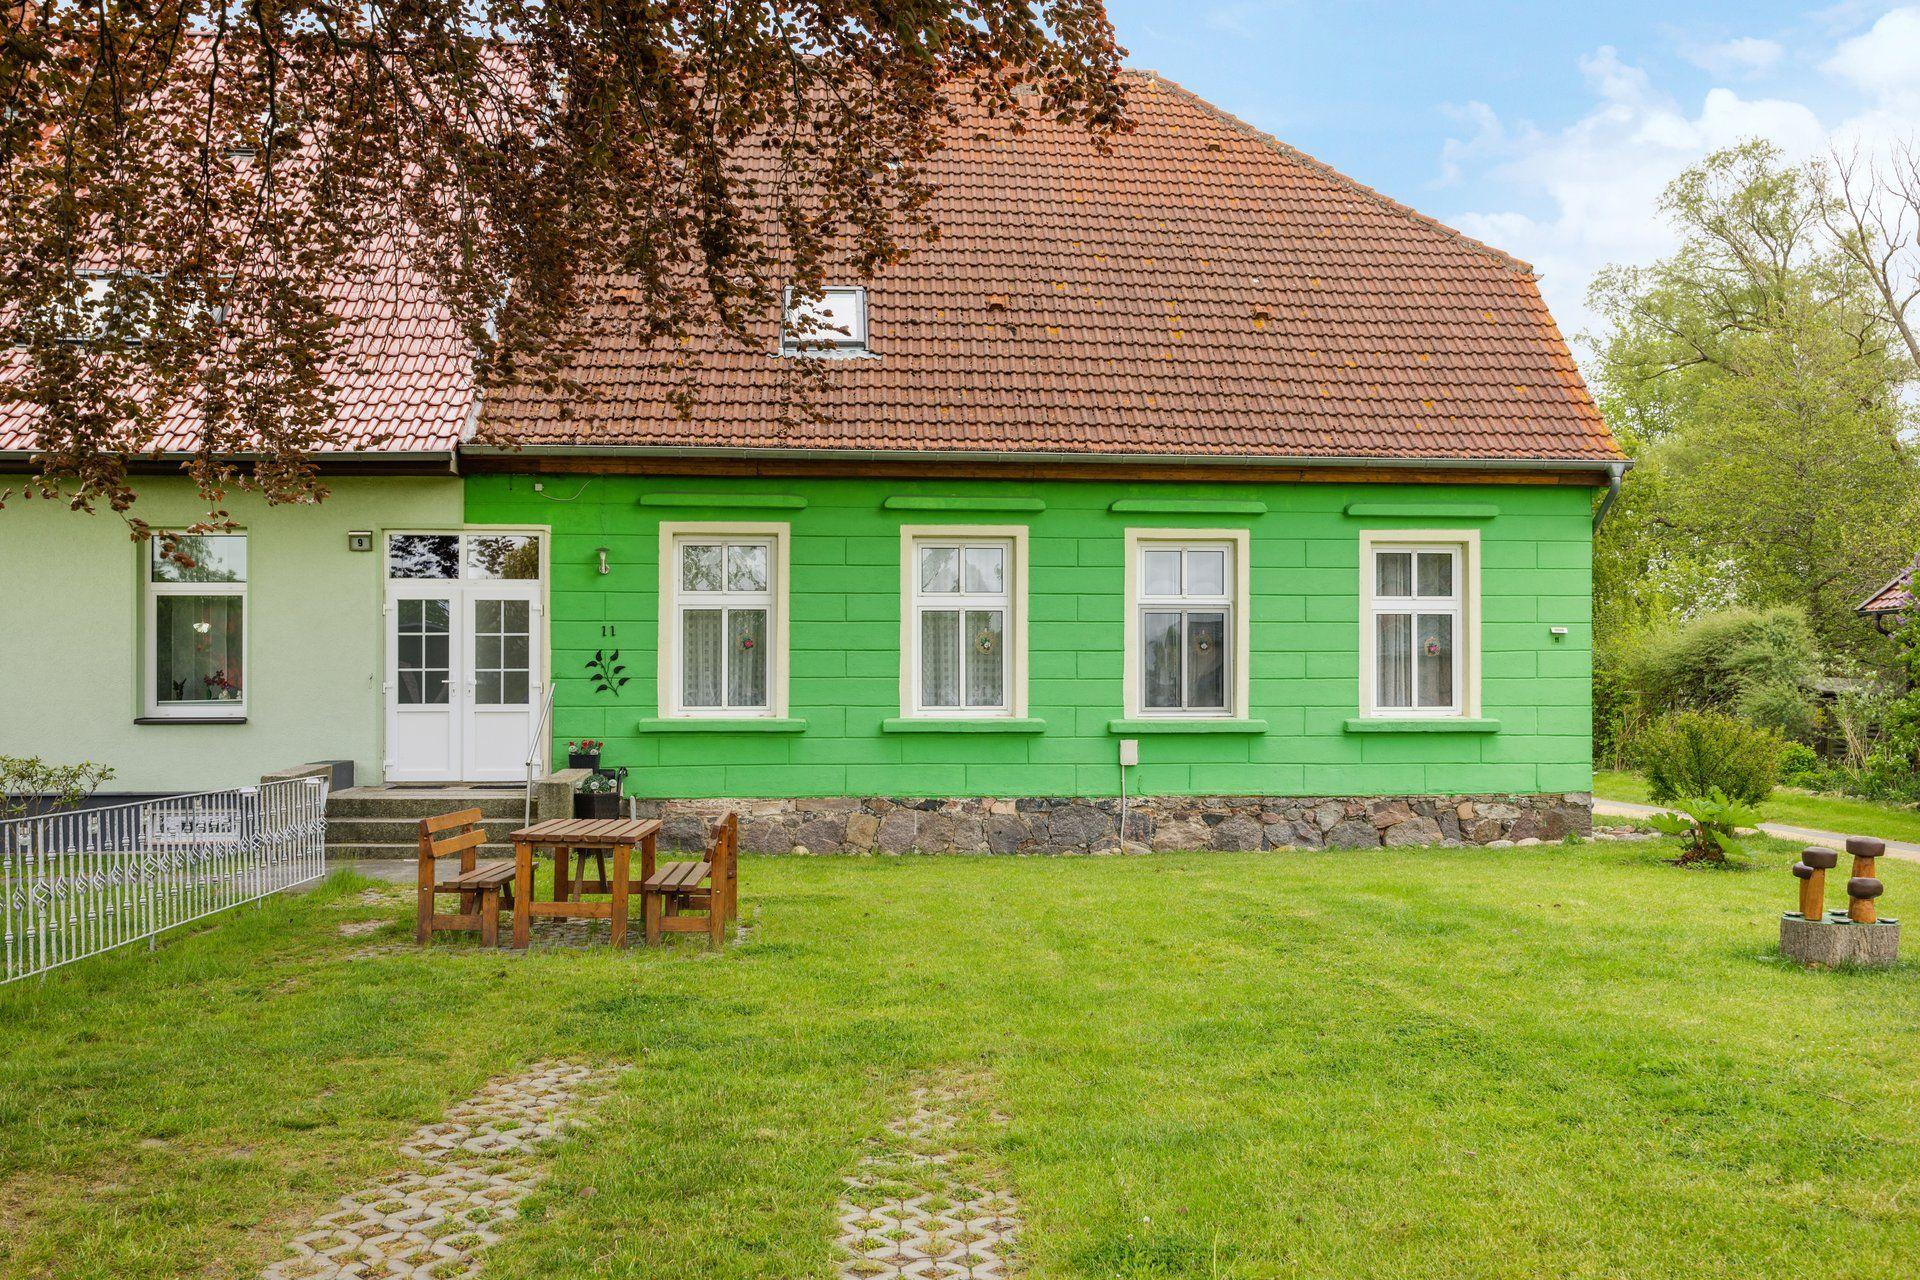 Ferienwohnung in Kramerhof mit Grill und Garten   Mecklenburger Ostseeküste